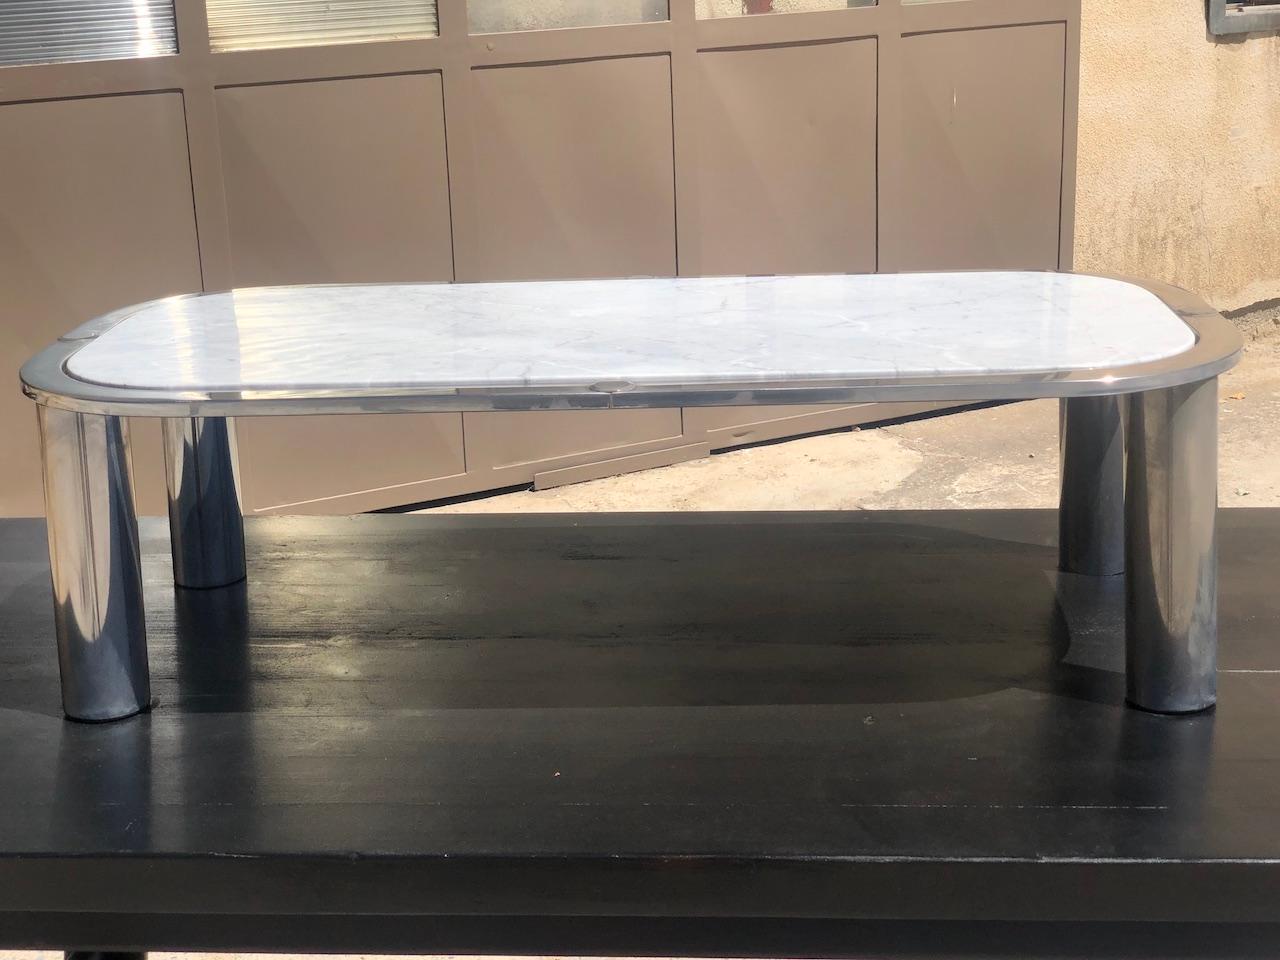 Vieille table basse avec plateau amovible en marbre blanc veiné. Structure et base en métal chromé.